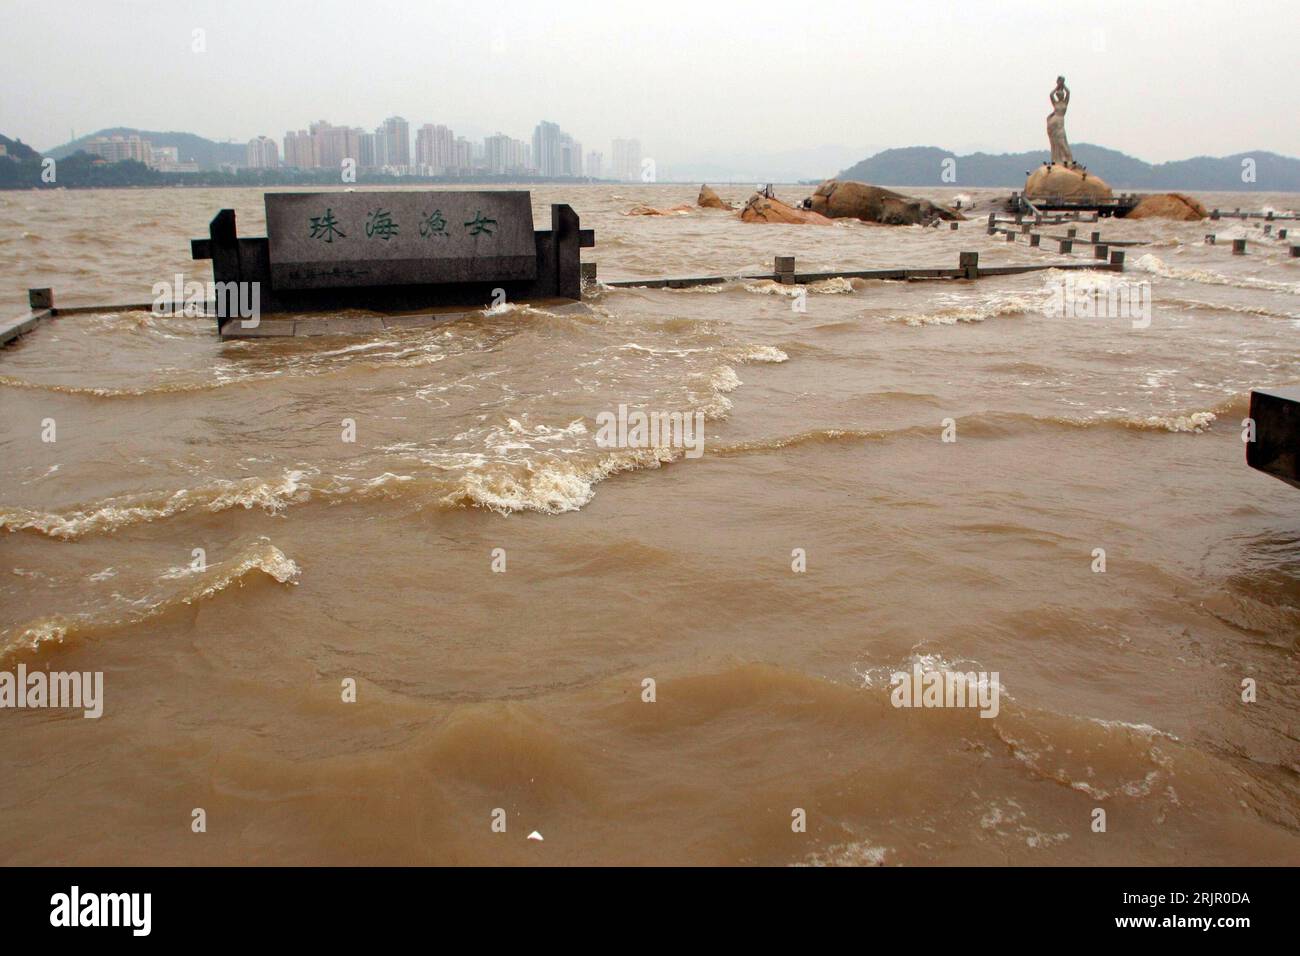 Bildnummer: 51265735 Datum: 16.05.2006 Copyright: imago/Xinhua Taifun Chanchu bringt Hochwasser nach Zhuhai, Die Küstenregion ist bereits geflutet, Landschaft; 2006, Zhuhai, Brandung, Welle, Taifune, Stürme, Wirbelsturm, Wirbelstürme, Unwetter, Wetter, Fahrräder, überflutet, überschwemmt, Überschwemmung, Überschwemmungen; , quer, Kbdig, totale, Meer, Küste, Cina, Foto Stock